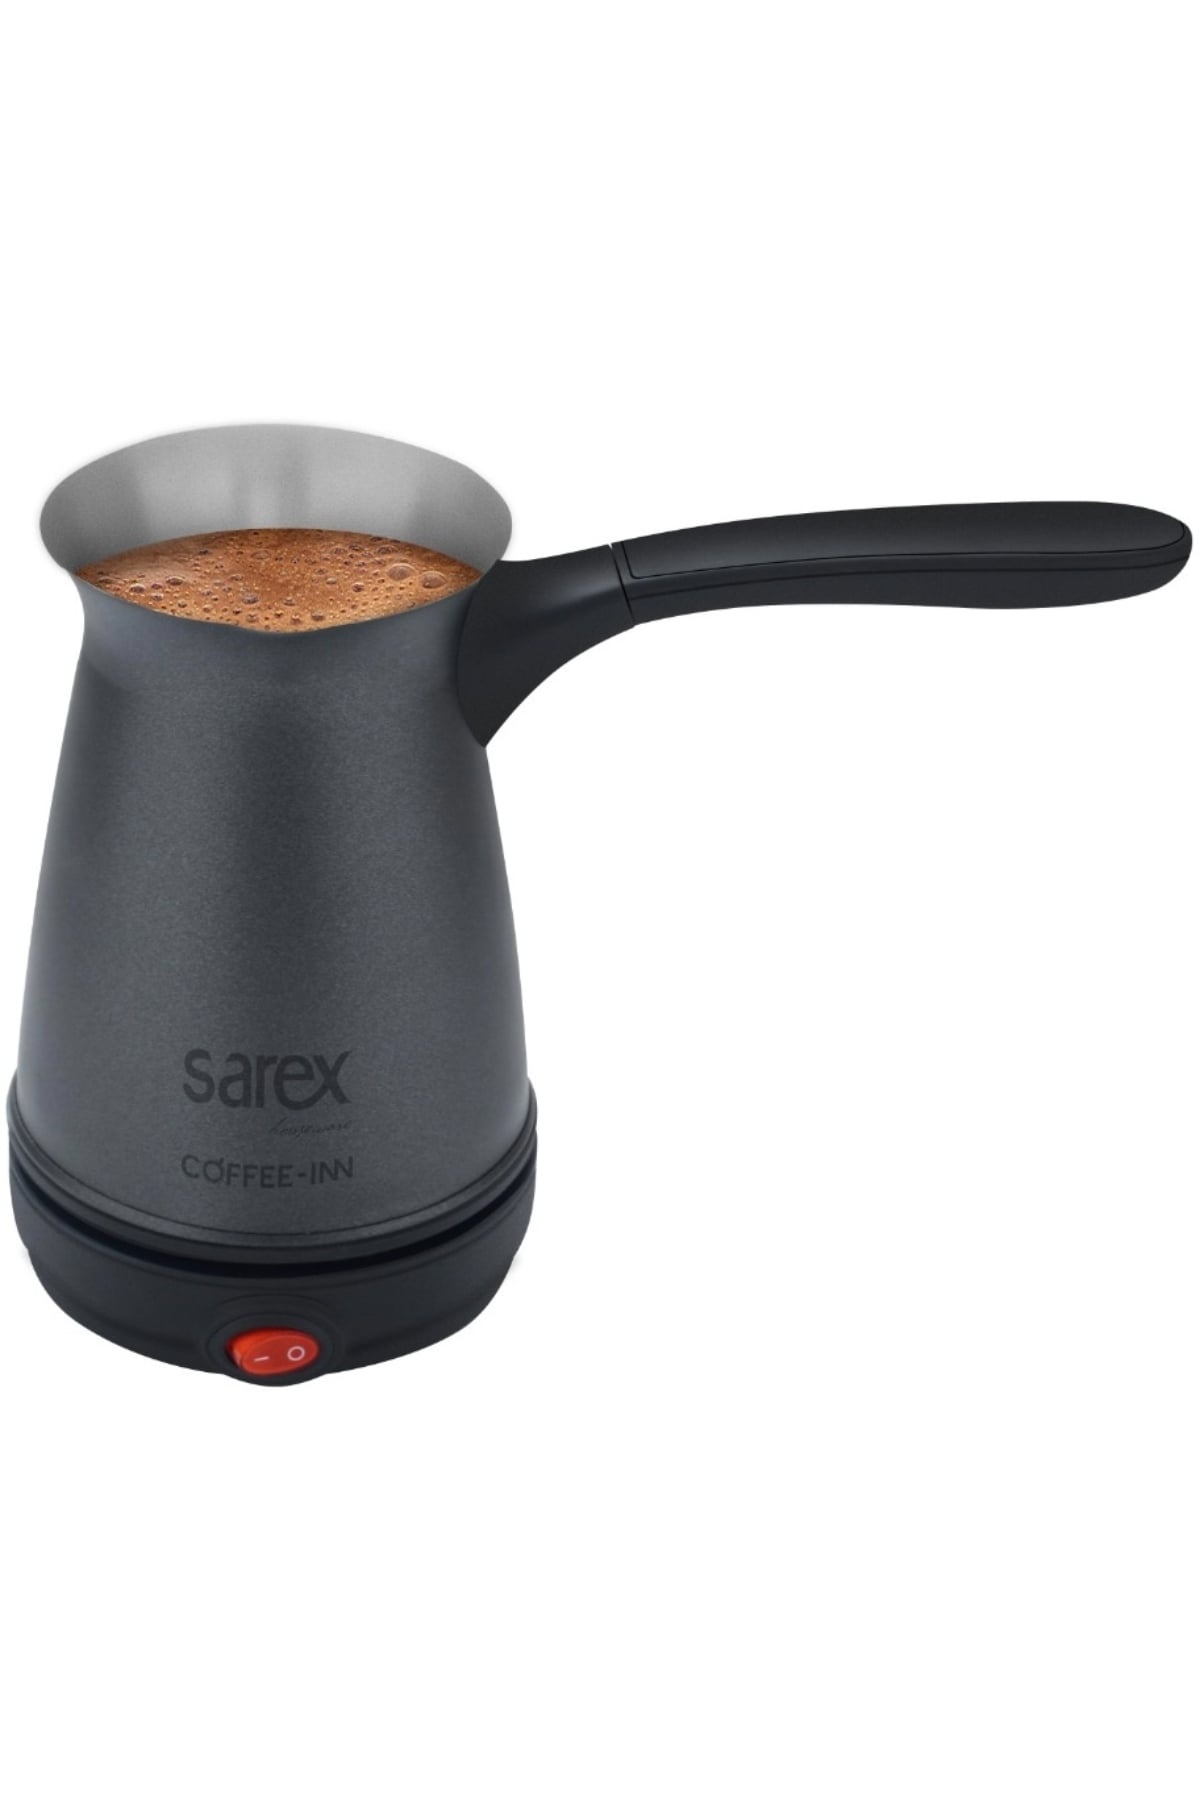 Sarex Sr-3120 Coffee-Inn Türk Kahvesi Makinası*12 - 11-0070 - 2345